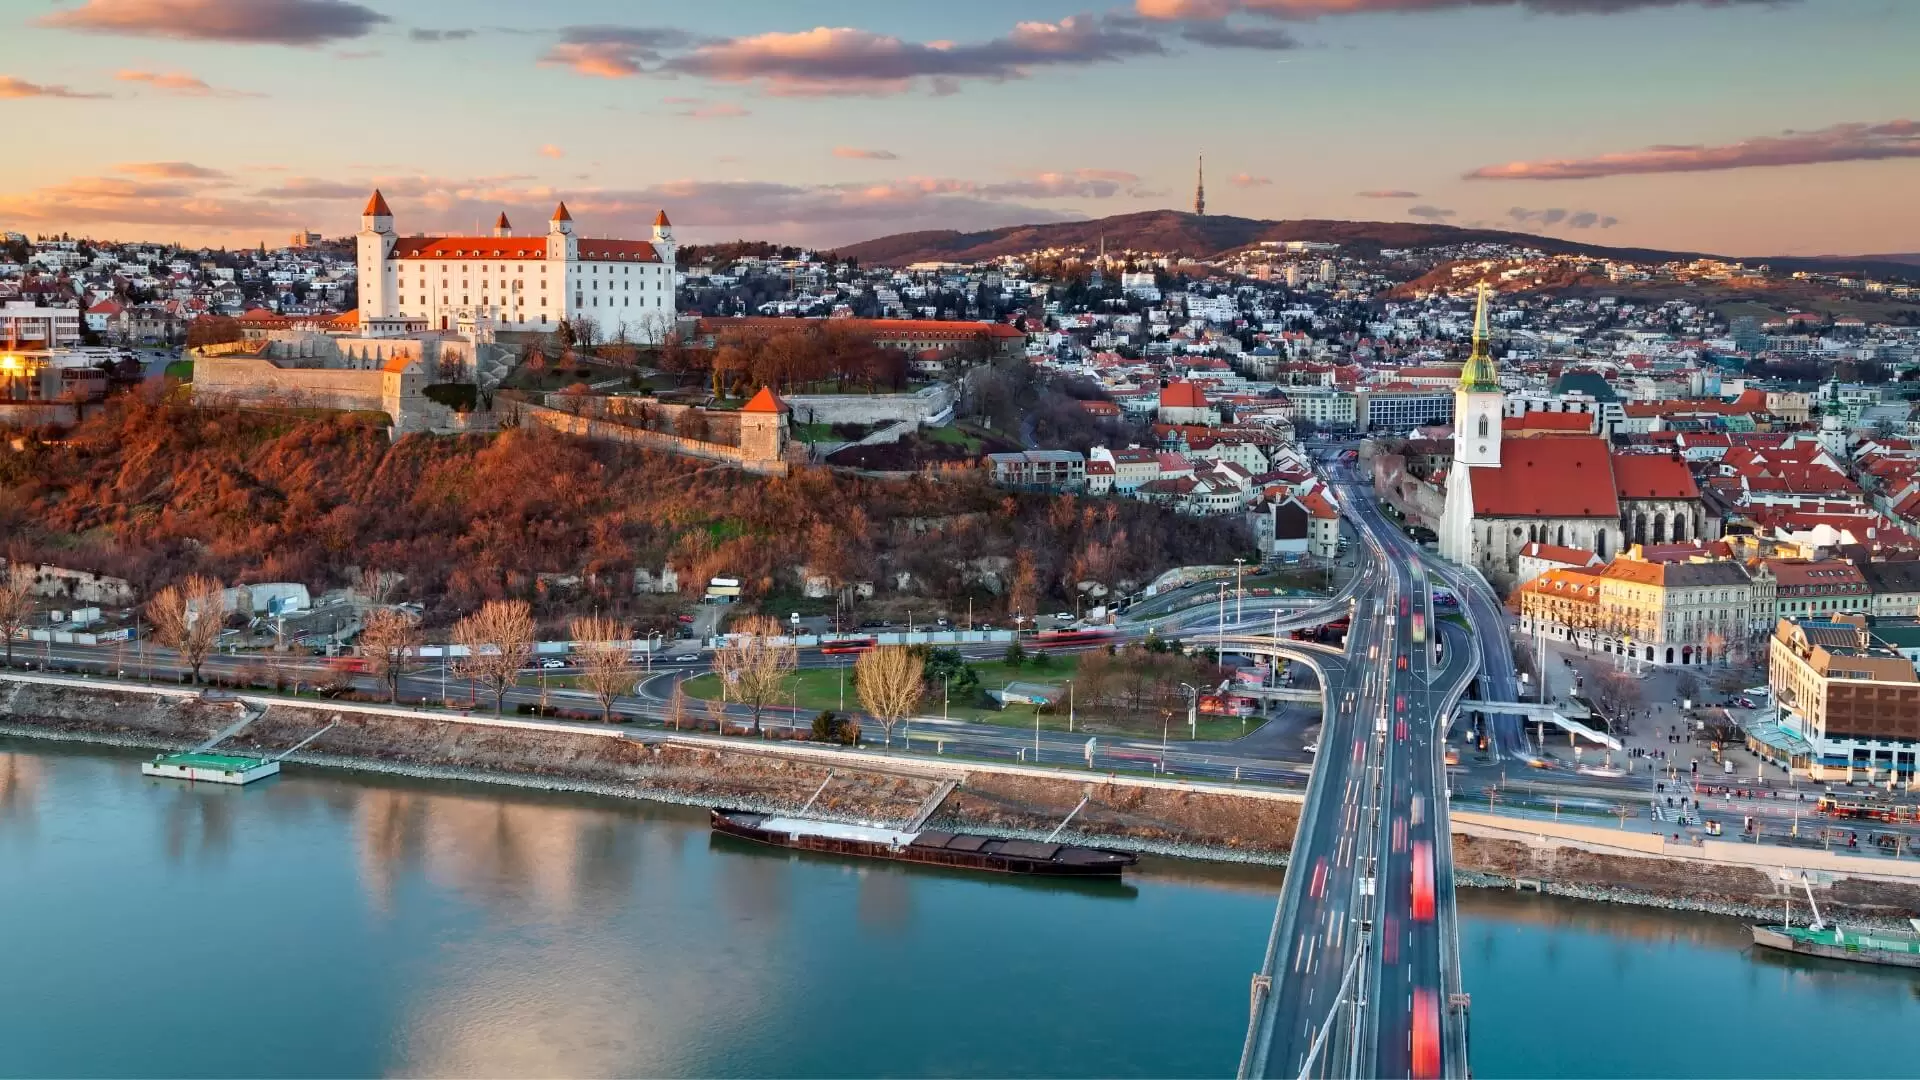 Destination: Bratislava, Slovakia